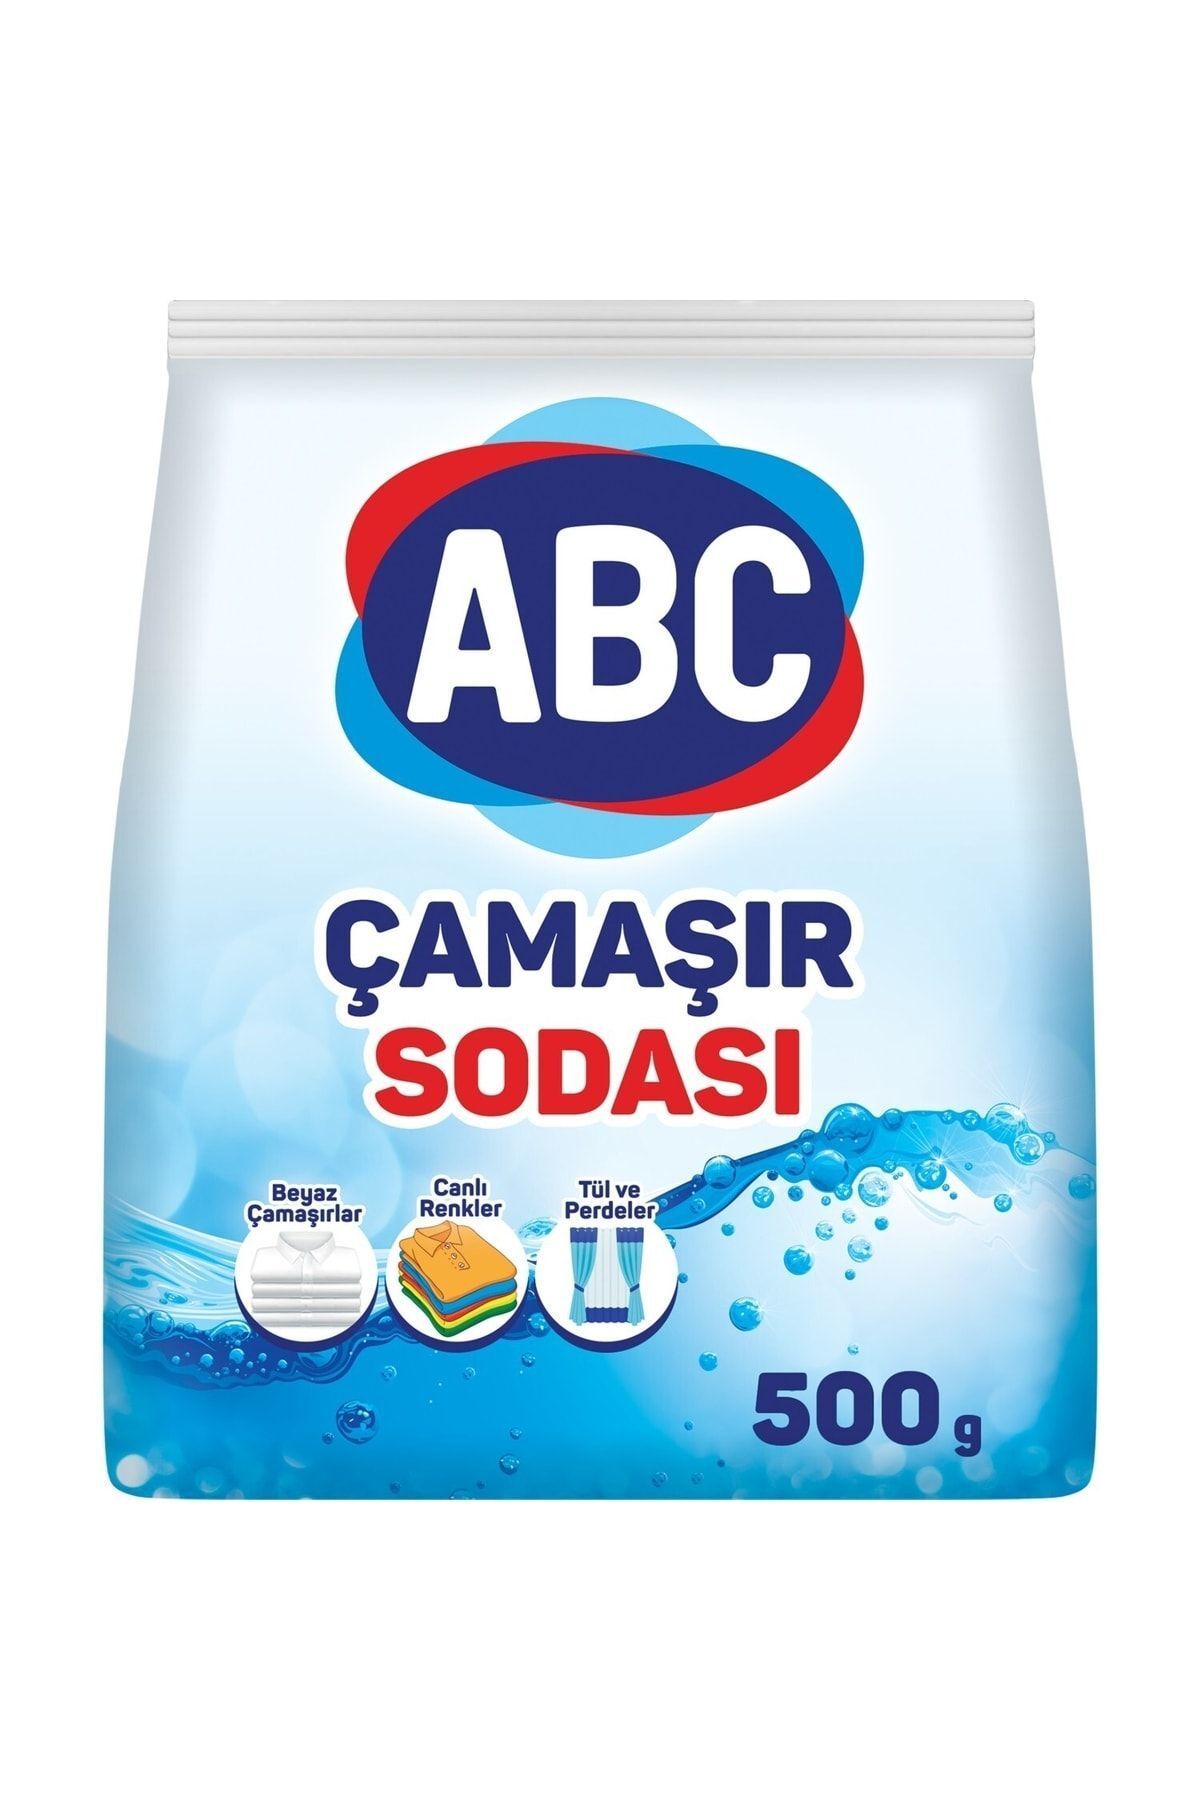 ABC Çamaşır Sodası 500gr